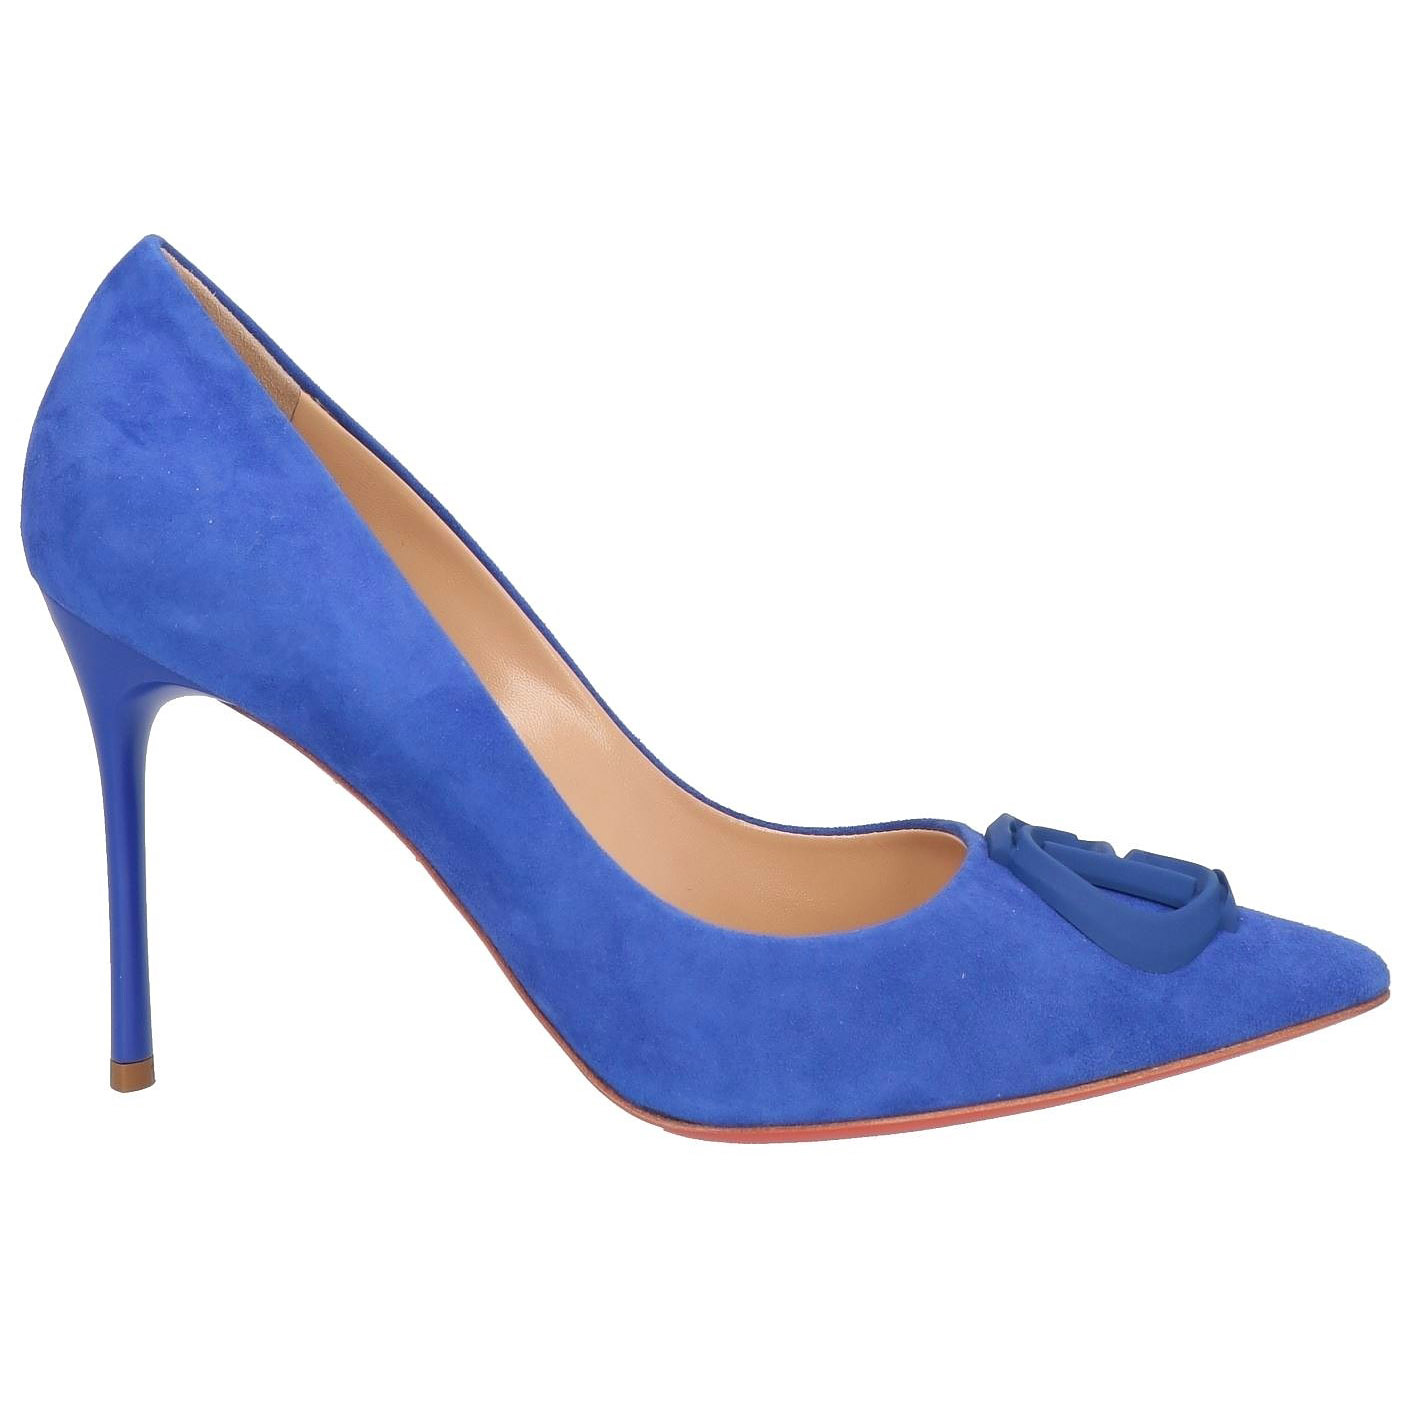 Туфли Baldinini, темно-голубой туфли на высоком каблуке 18 см туфли на высоком каблуке туфли на высоком каблуке подмодели для съемки фотографий танцевальная обувь